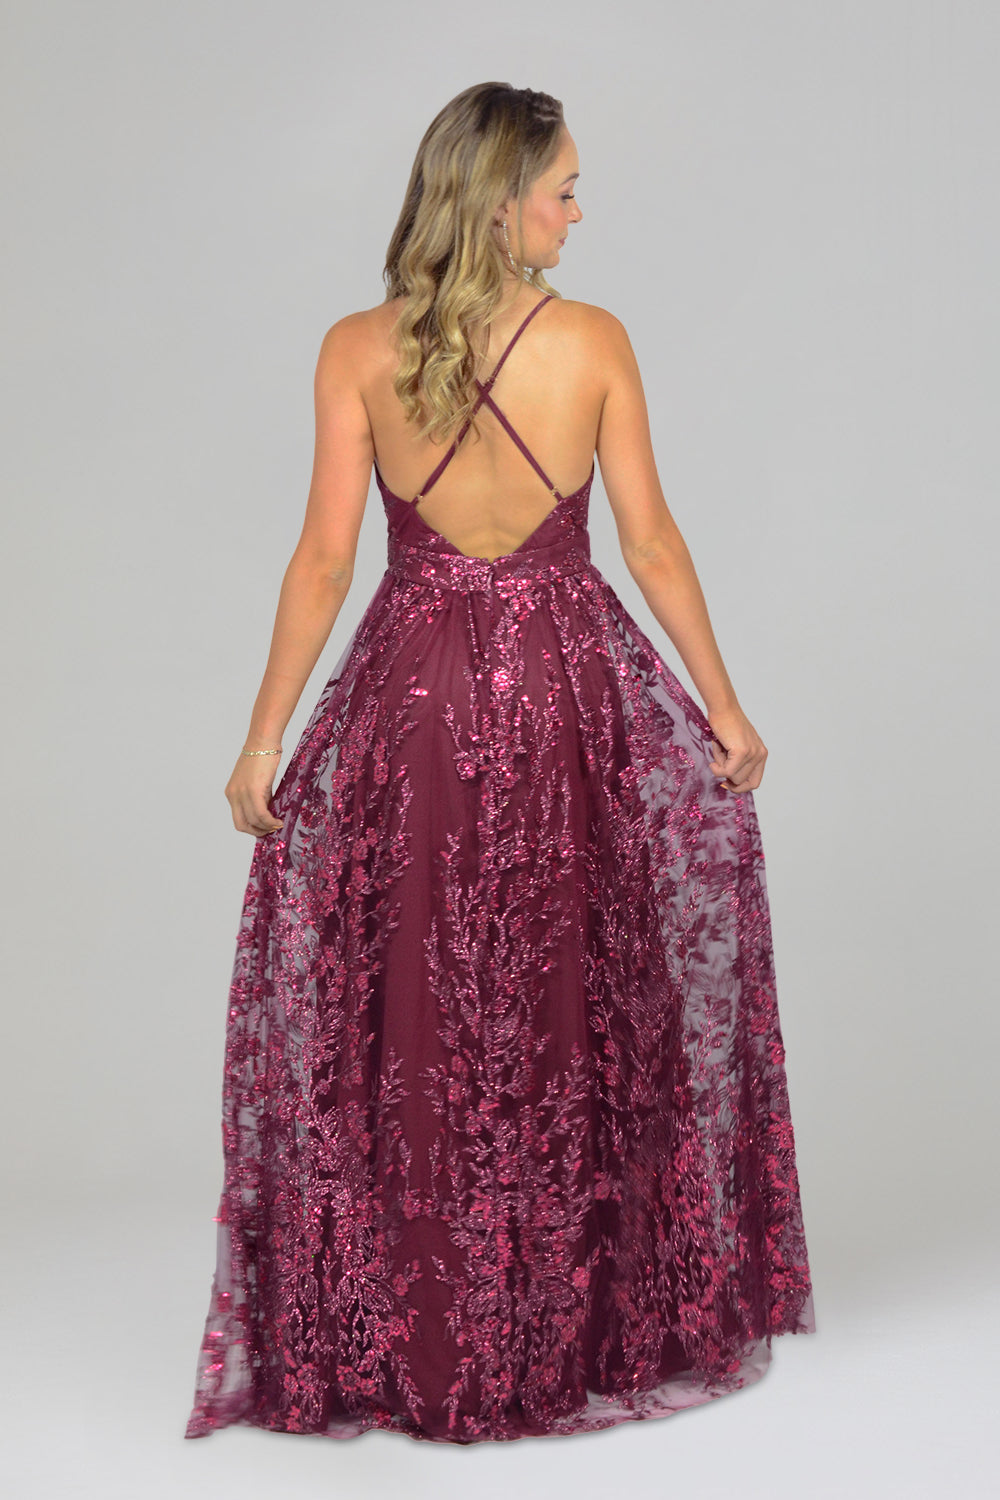 perth custom bridesmaid dressmakers burgundy dresses envious bridal & formal